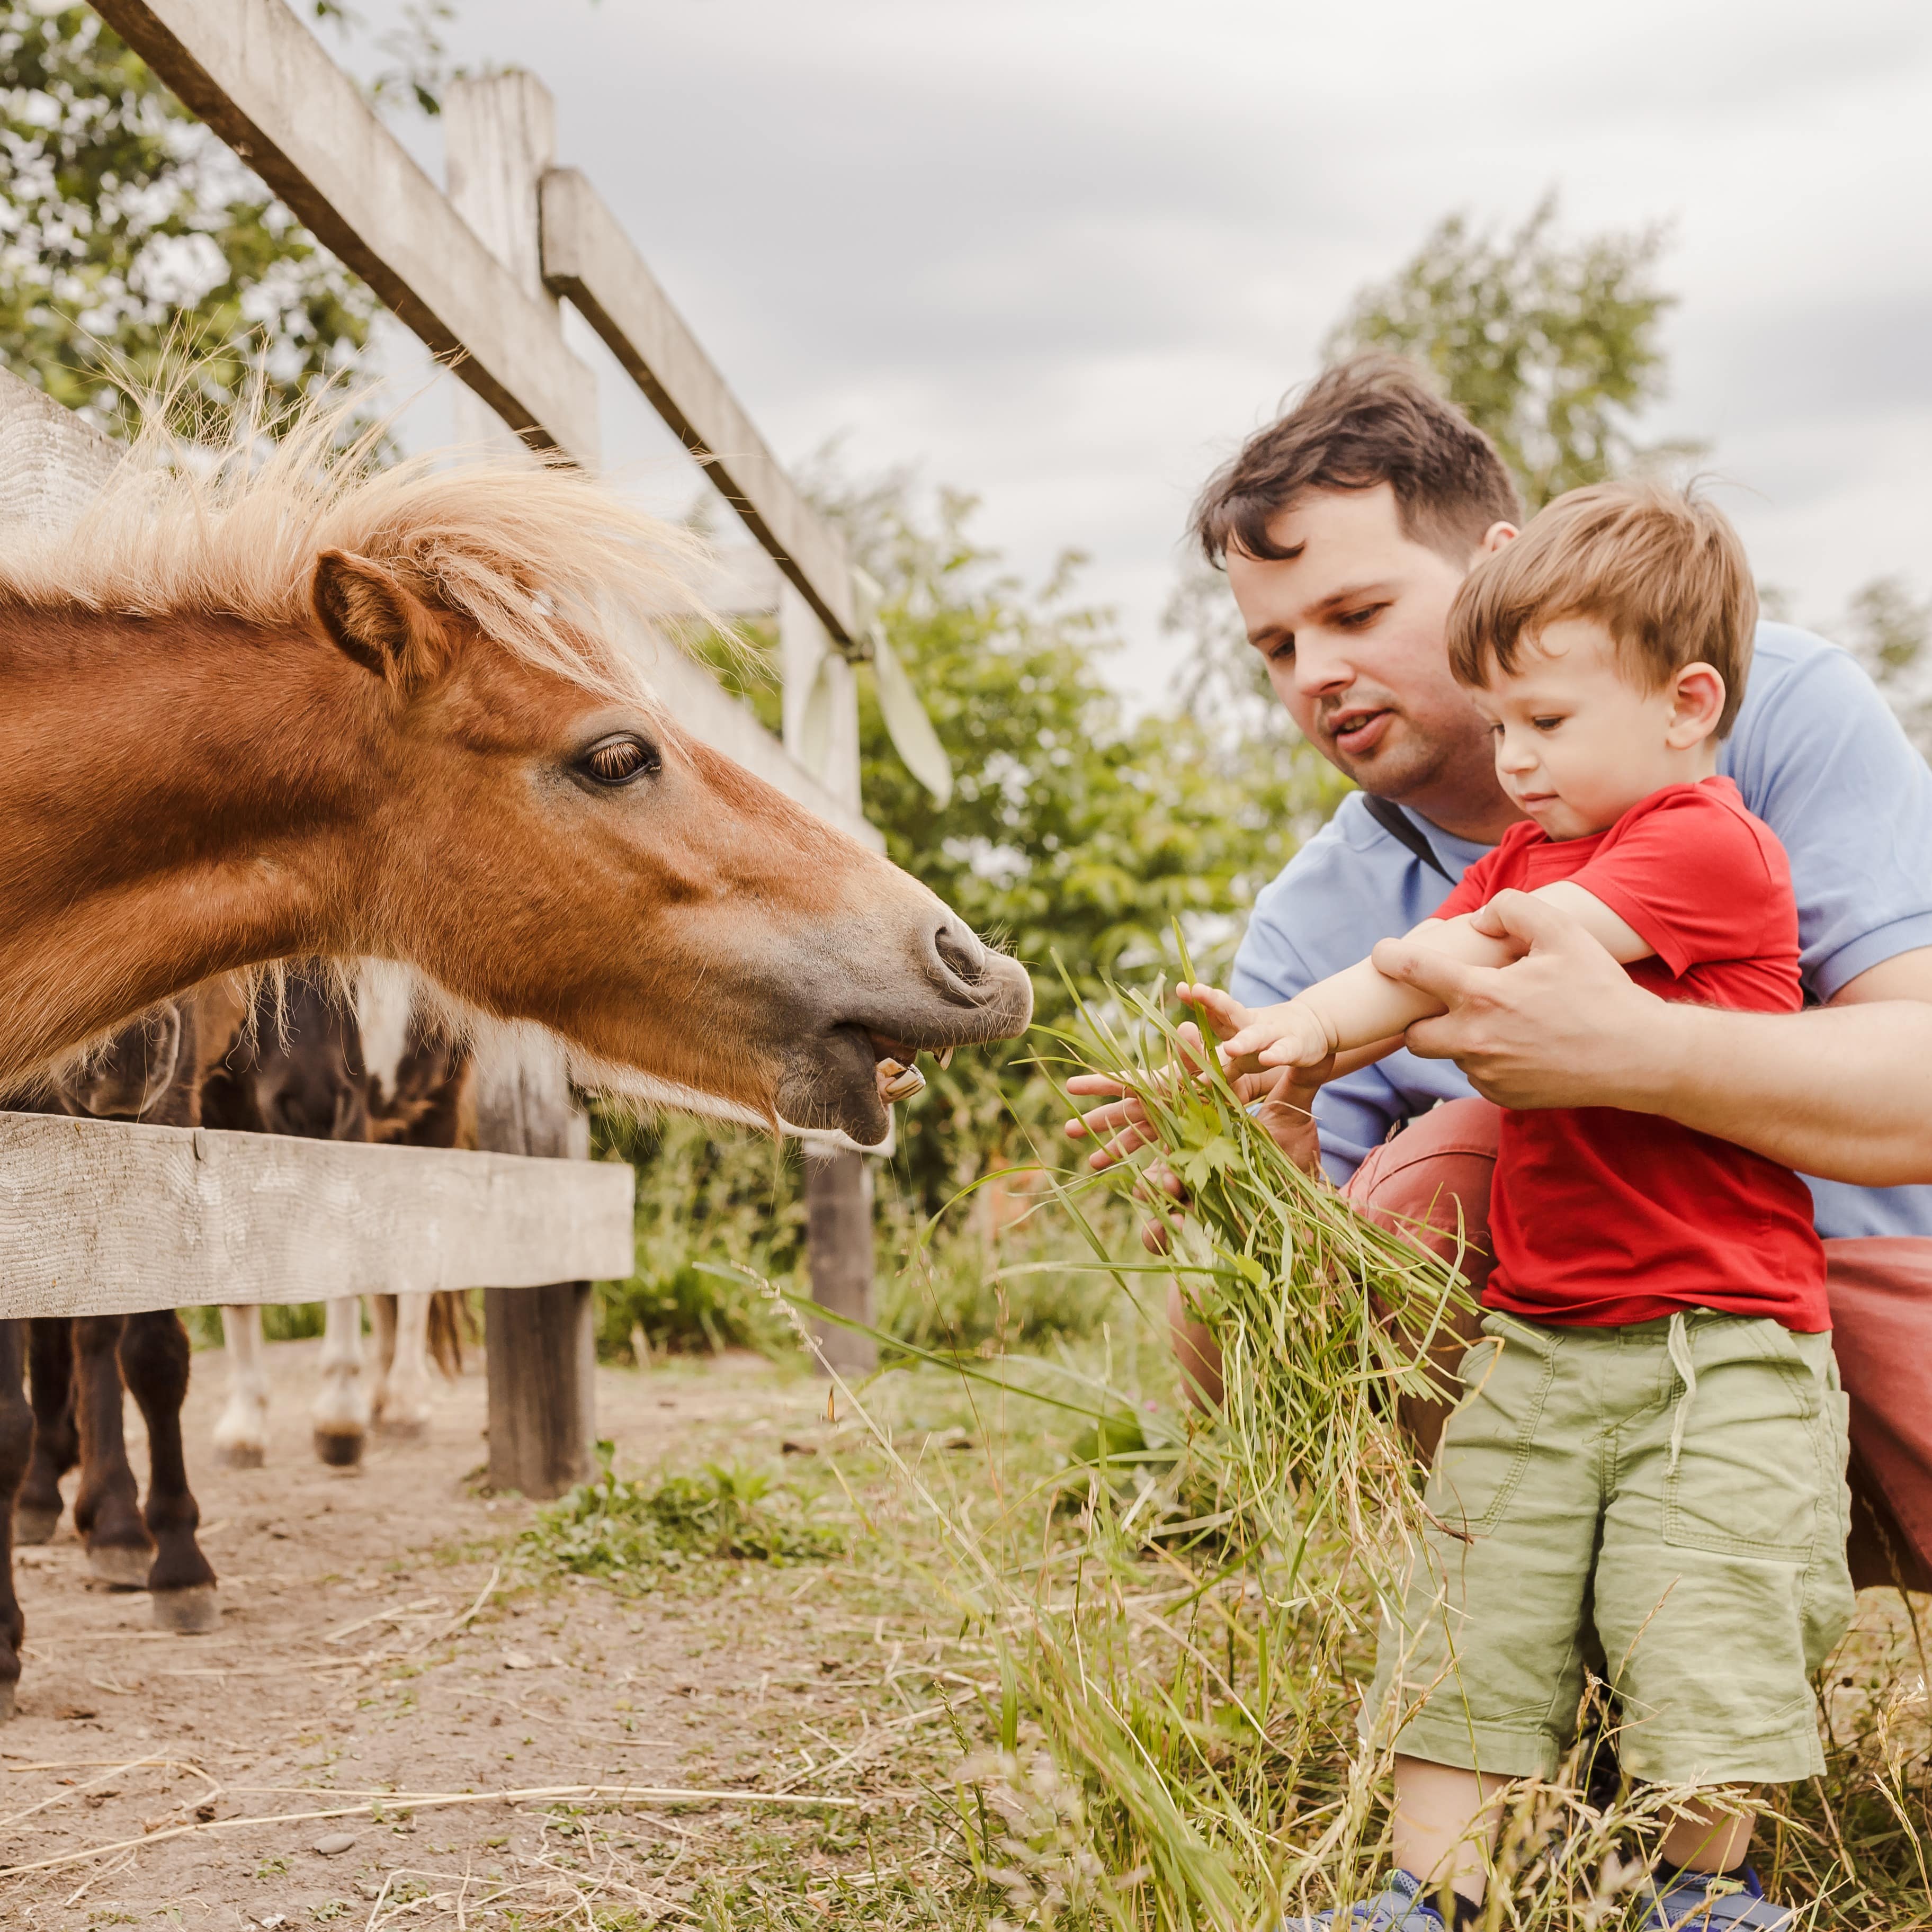 Vater und kleiner Sohn füttern ein Pony mit Gras. Das Pony steht hinter einem Zaun.